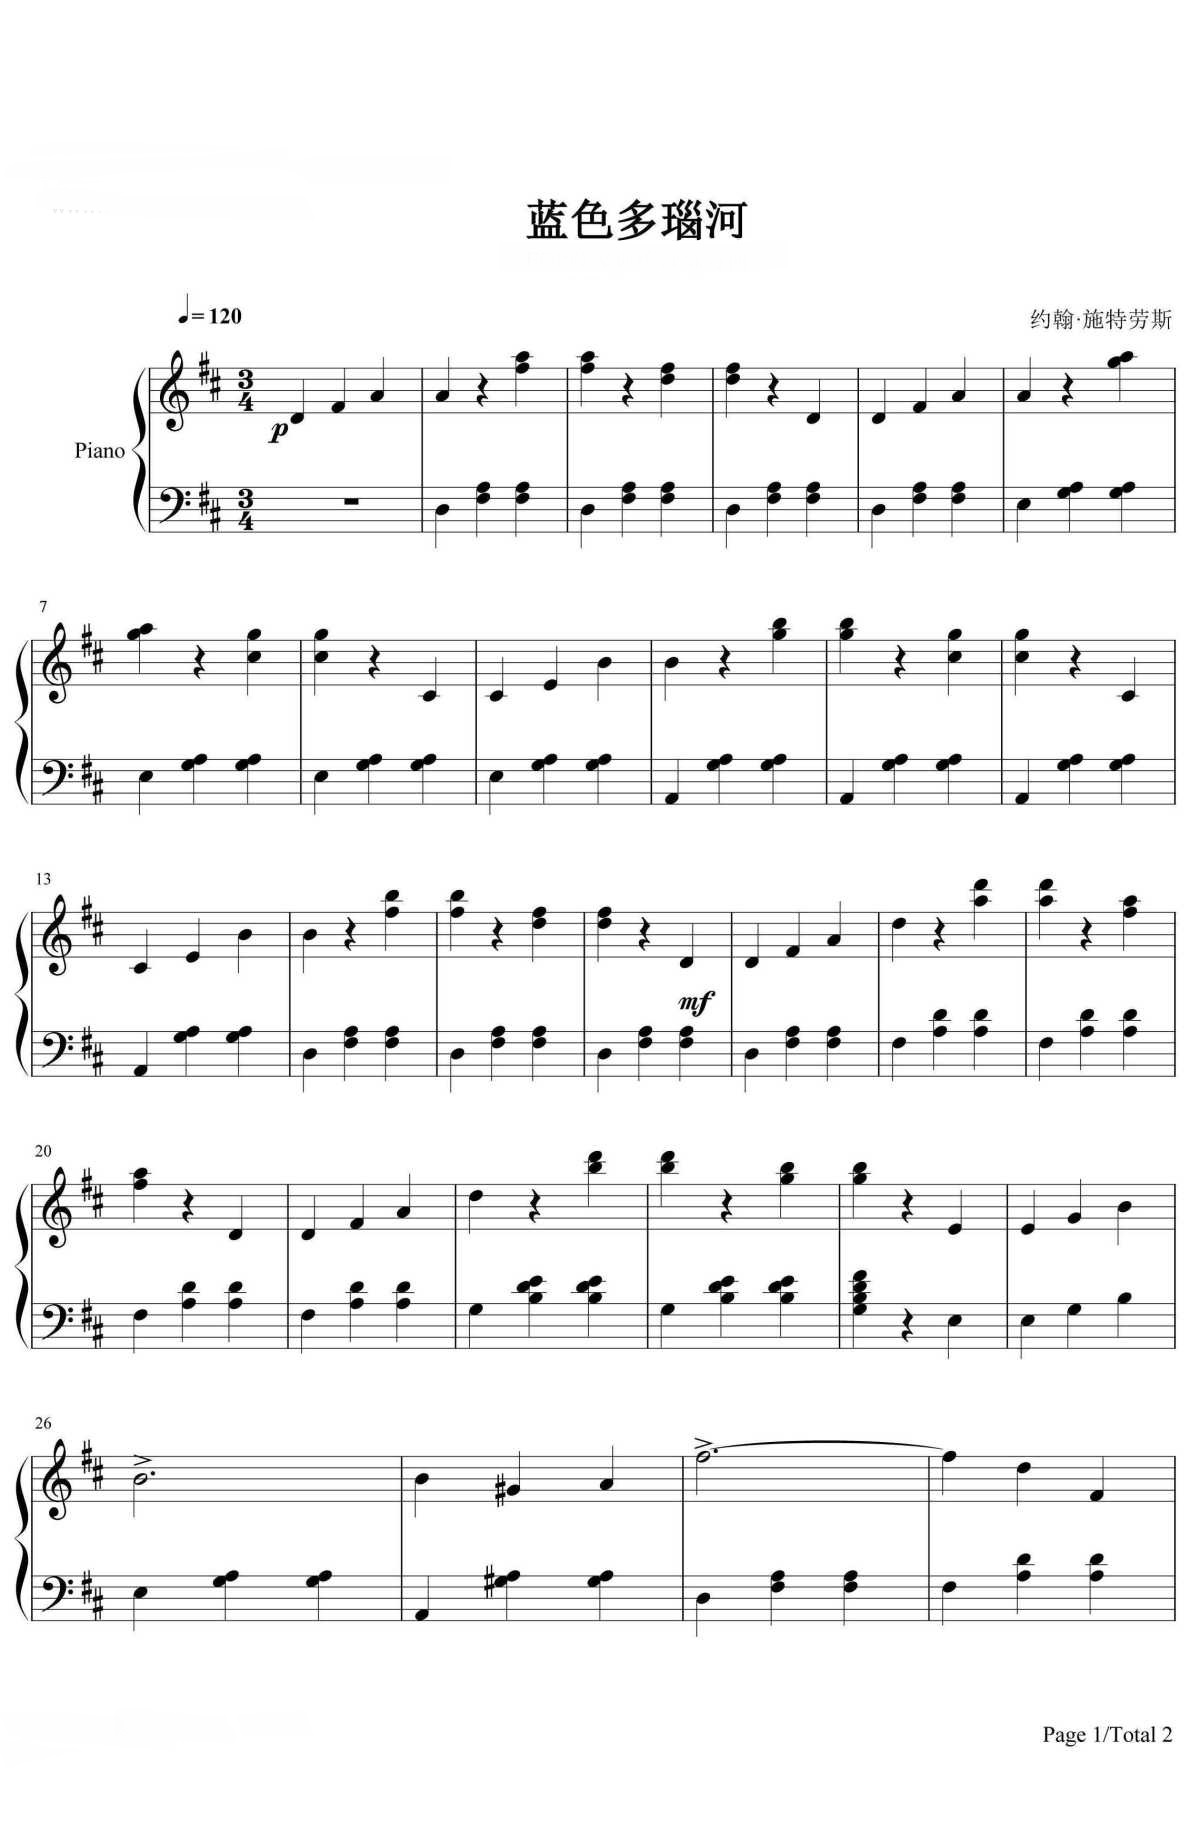 【蓝色多瑙河】的钢琴谱简谱 – 小约翰·施特劳斯
